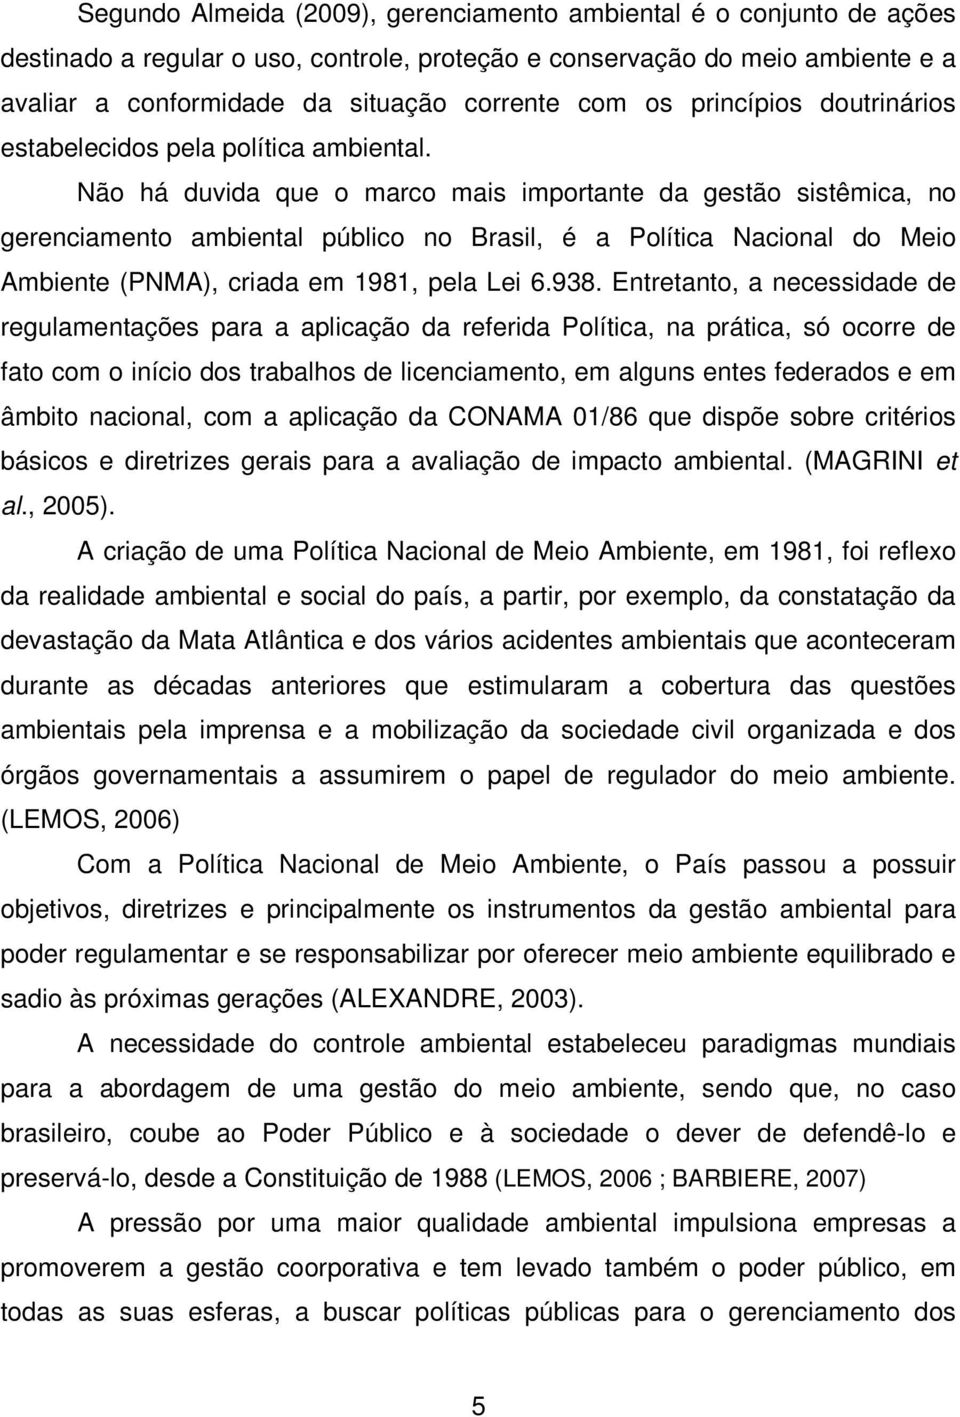 Não há duvida que o marco mais importante da gestão sistêmica, no gerenciamento ambiental público no Brasil, é a Política Nacional do Meio Ambiente (PNMA), criada em 1981, pela Lei 6.938.